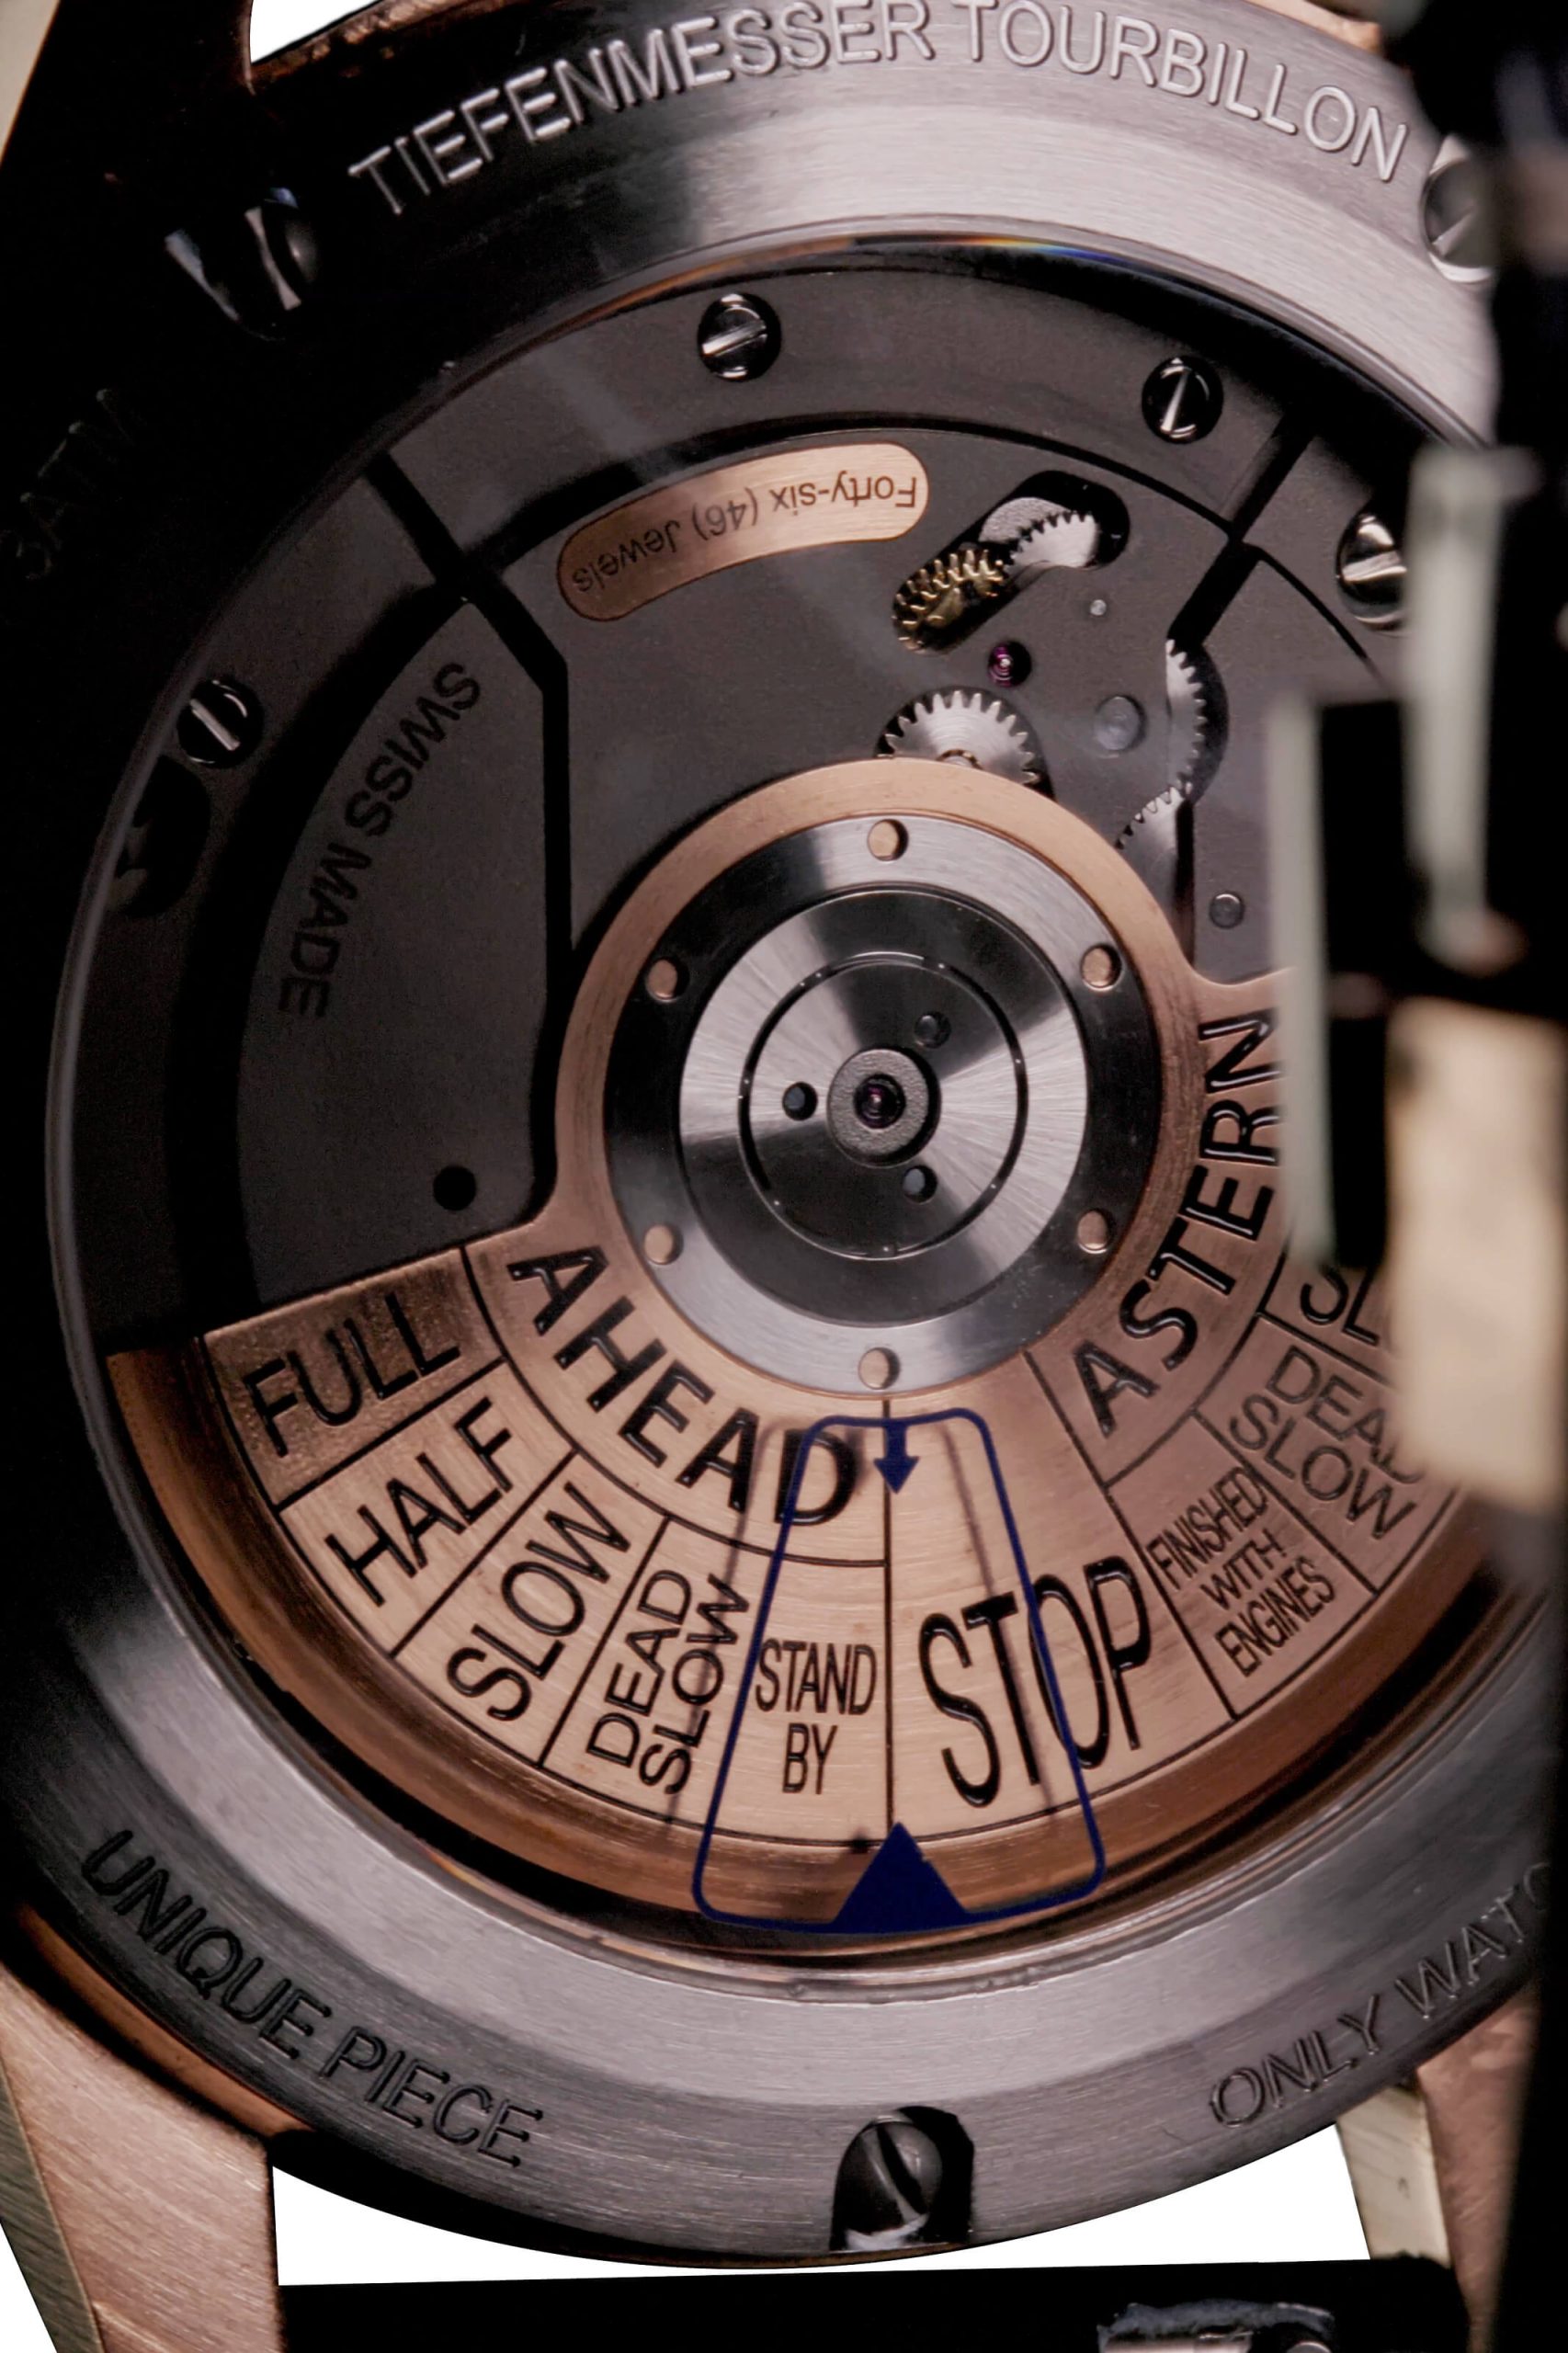 Luxury Swissmade Tourbillon Tiefenmesser Watch in Dark Brown, Light Beige & Light Grey-Beige.